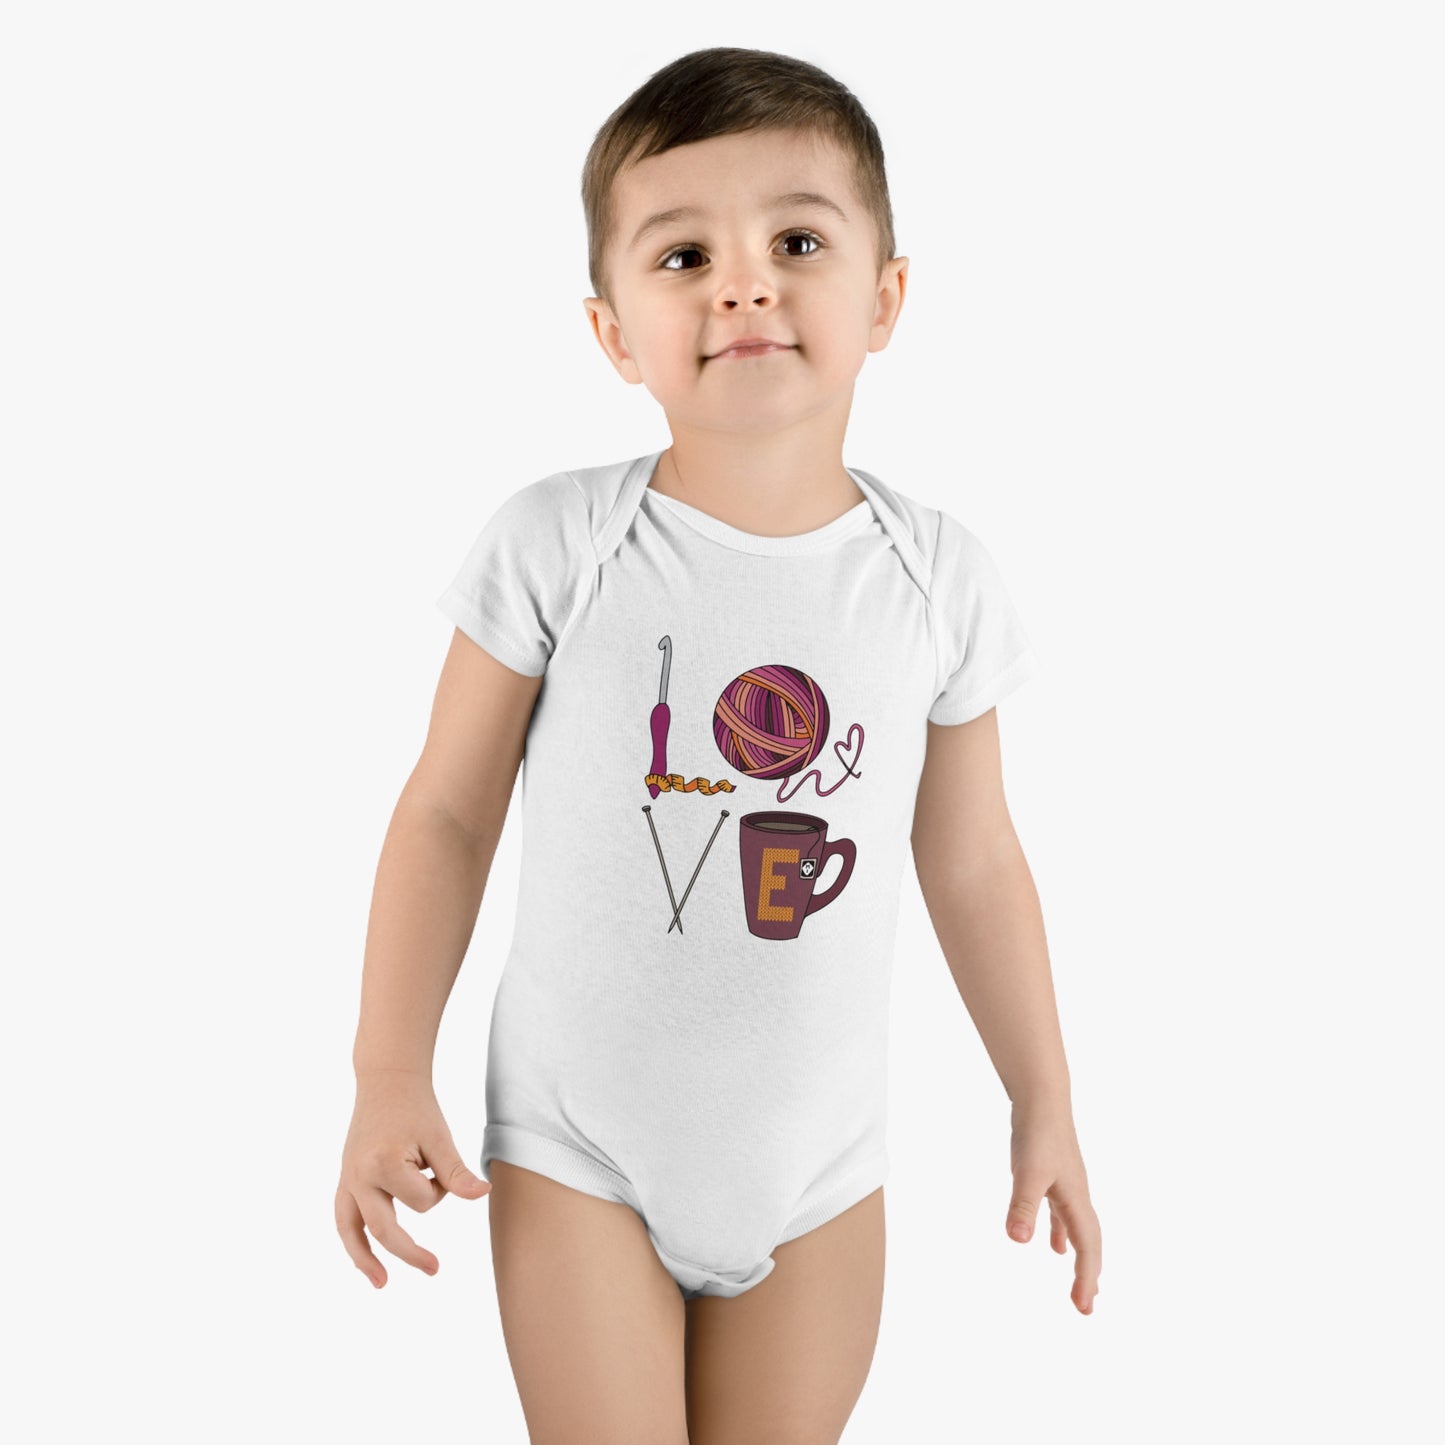 LOVE Organic Baby Bodysuit